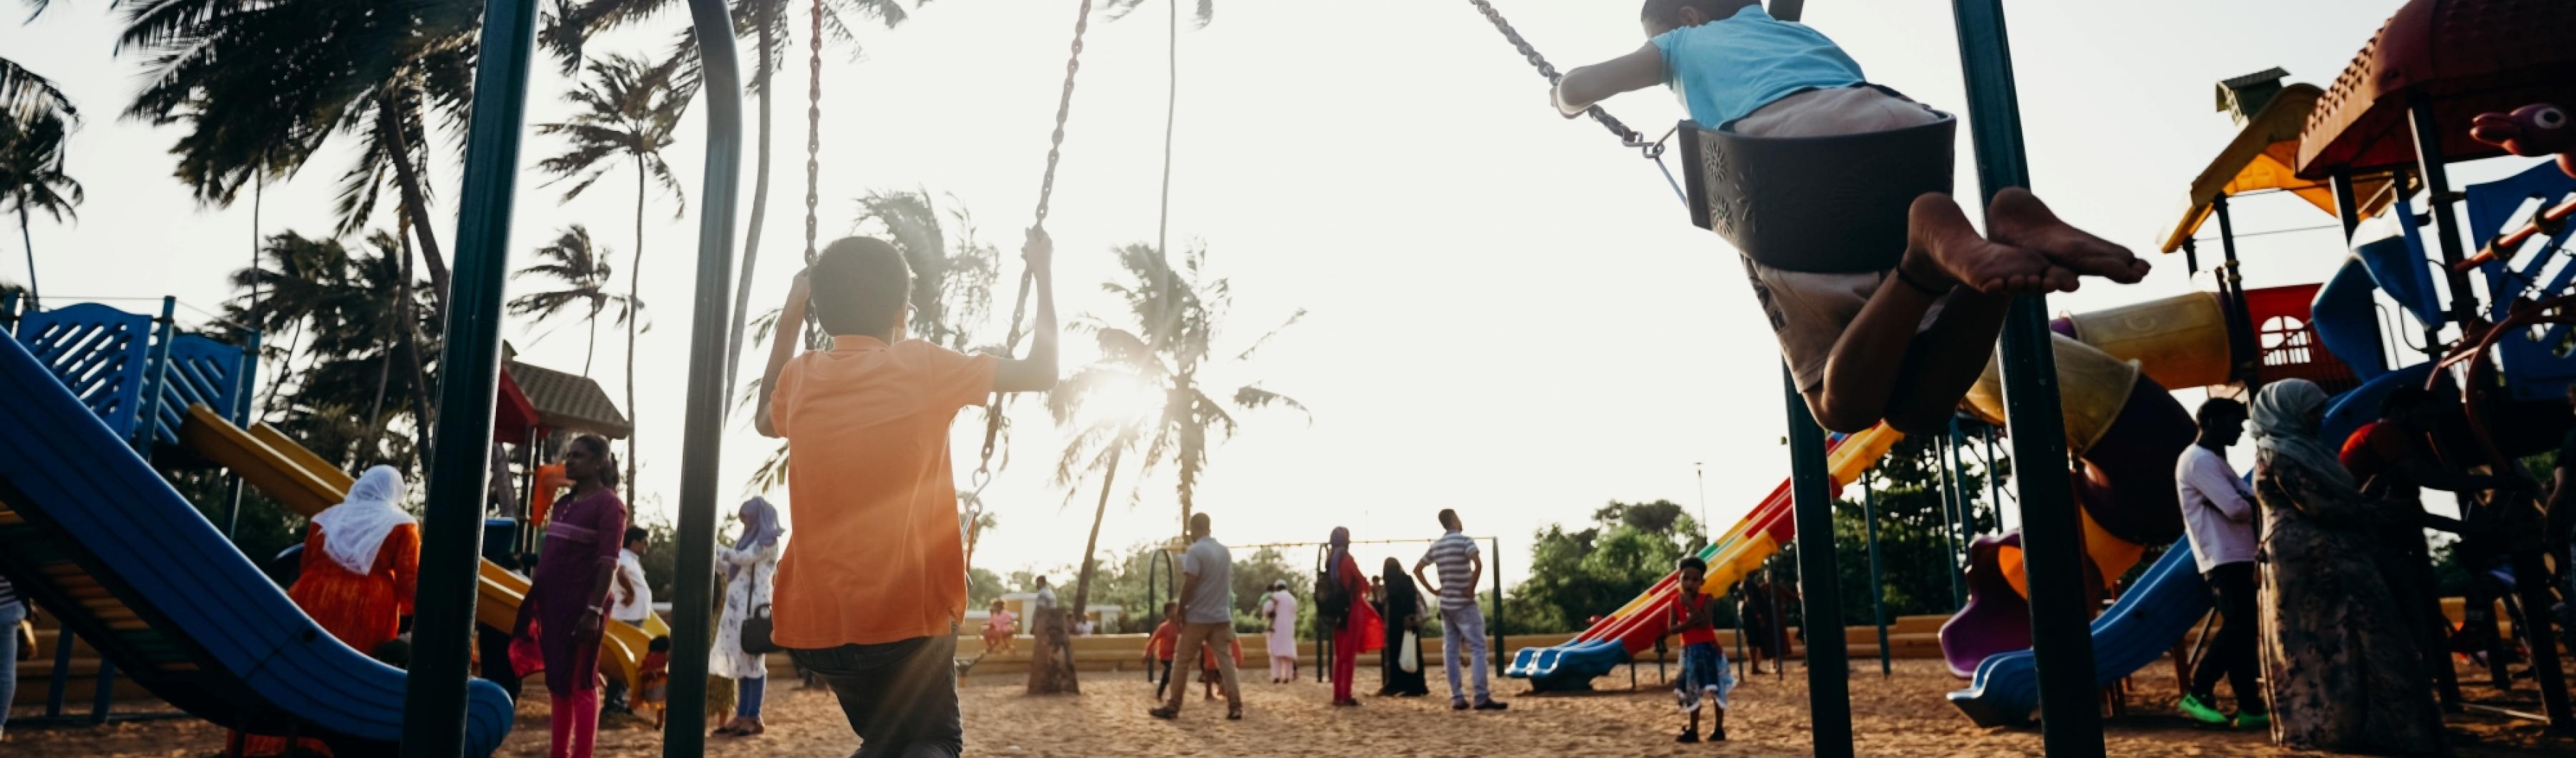 Crianças brincando em balanços em um parque de bairro repleto de árvores